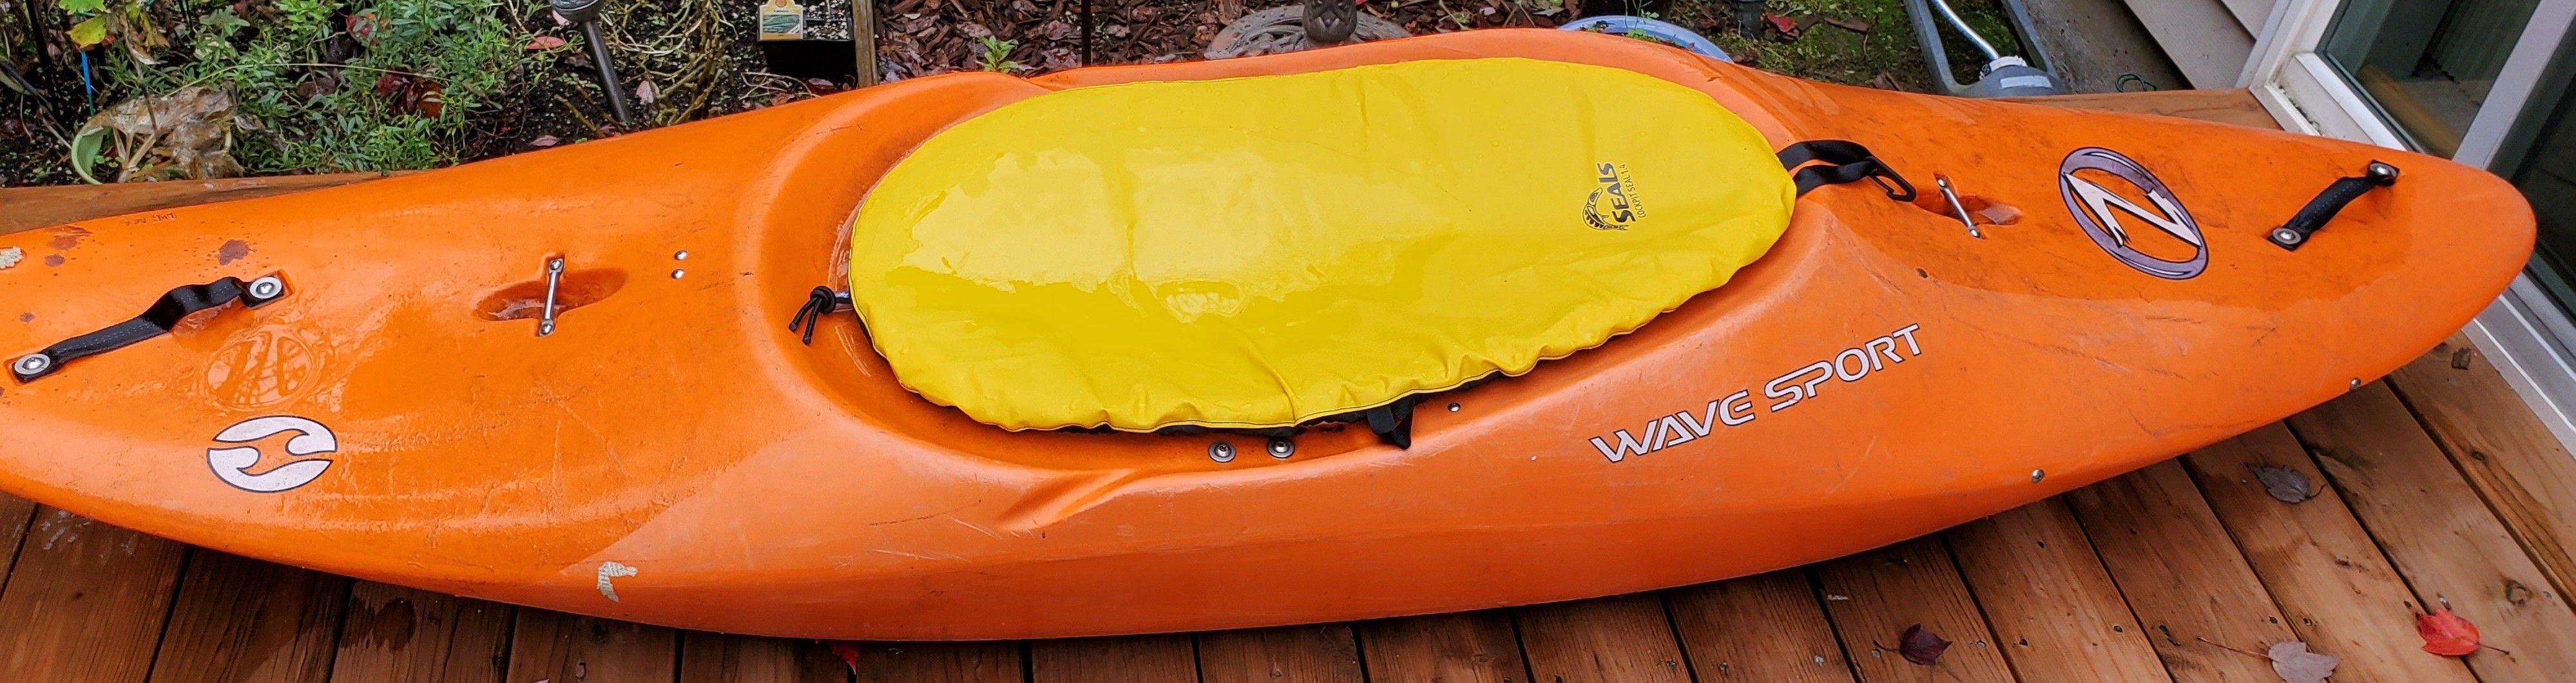 $350 Whitewater Kayak Play Boat